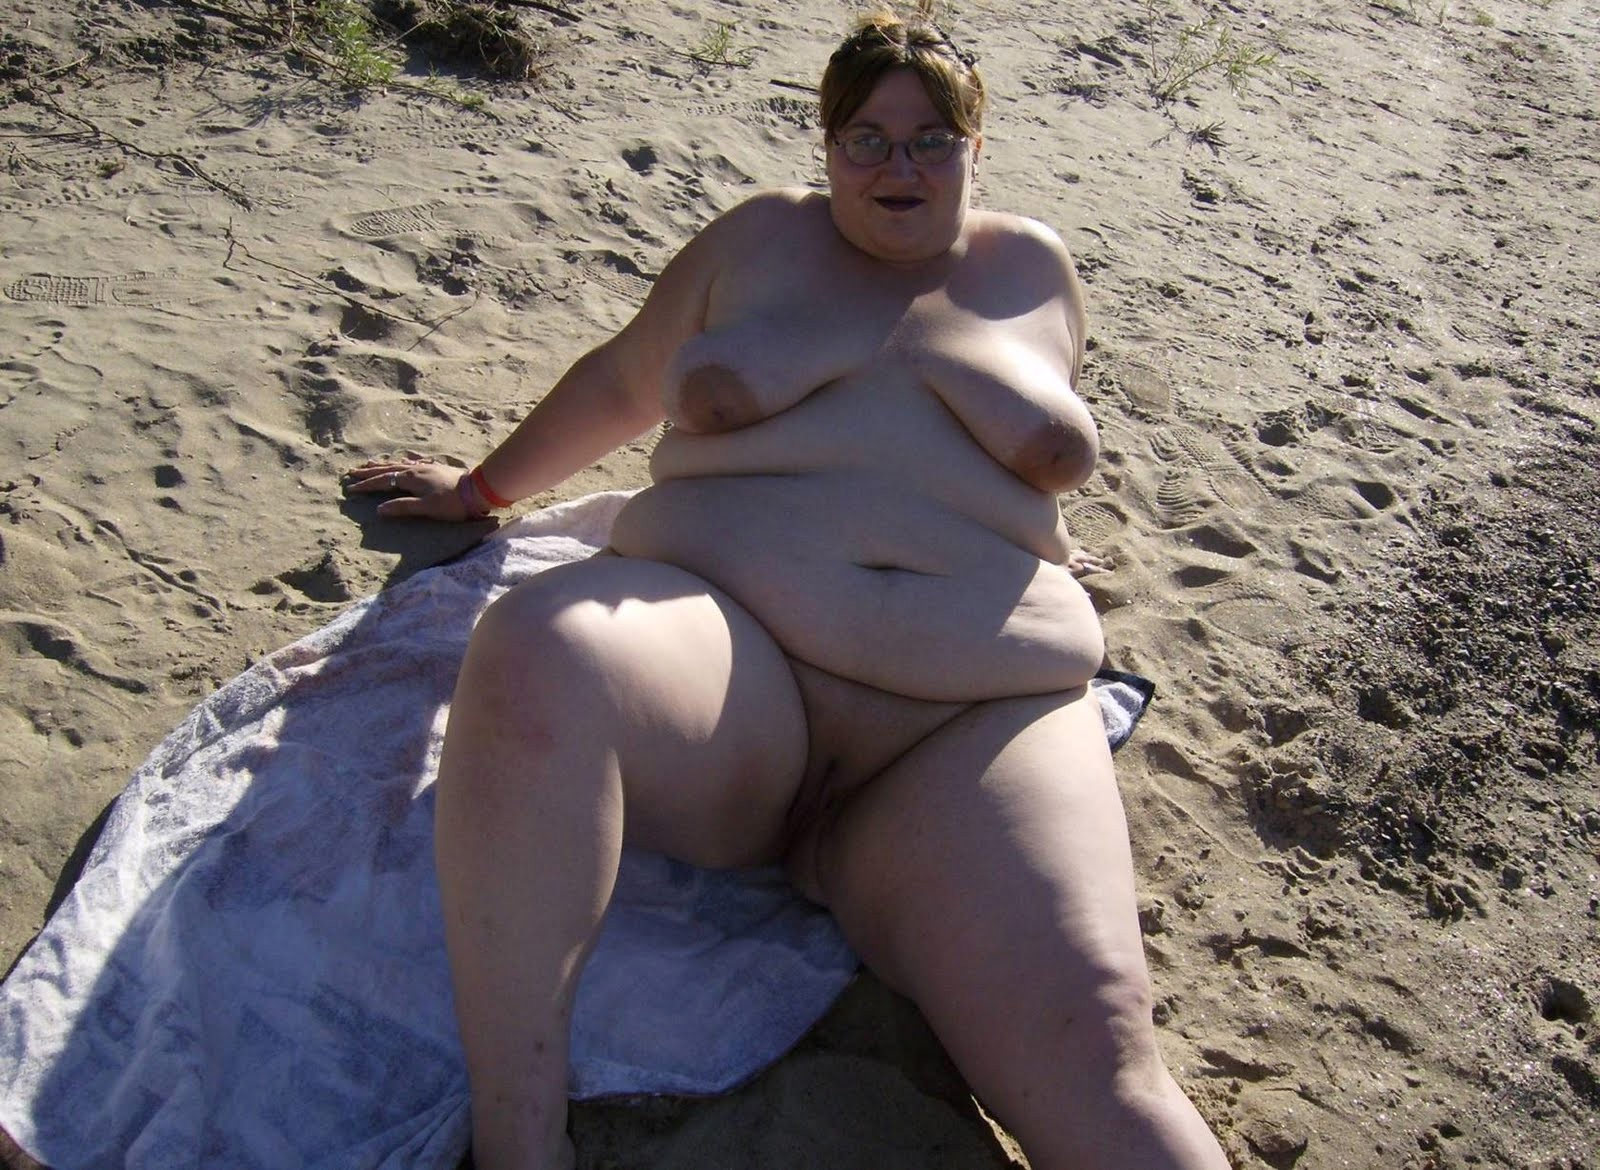 Chubby mature ladies sunbathing on a nudist beach